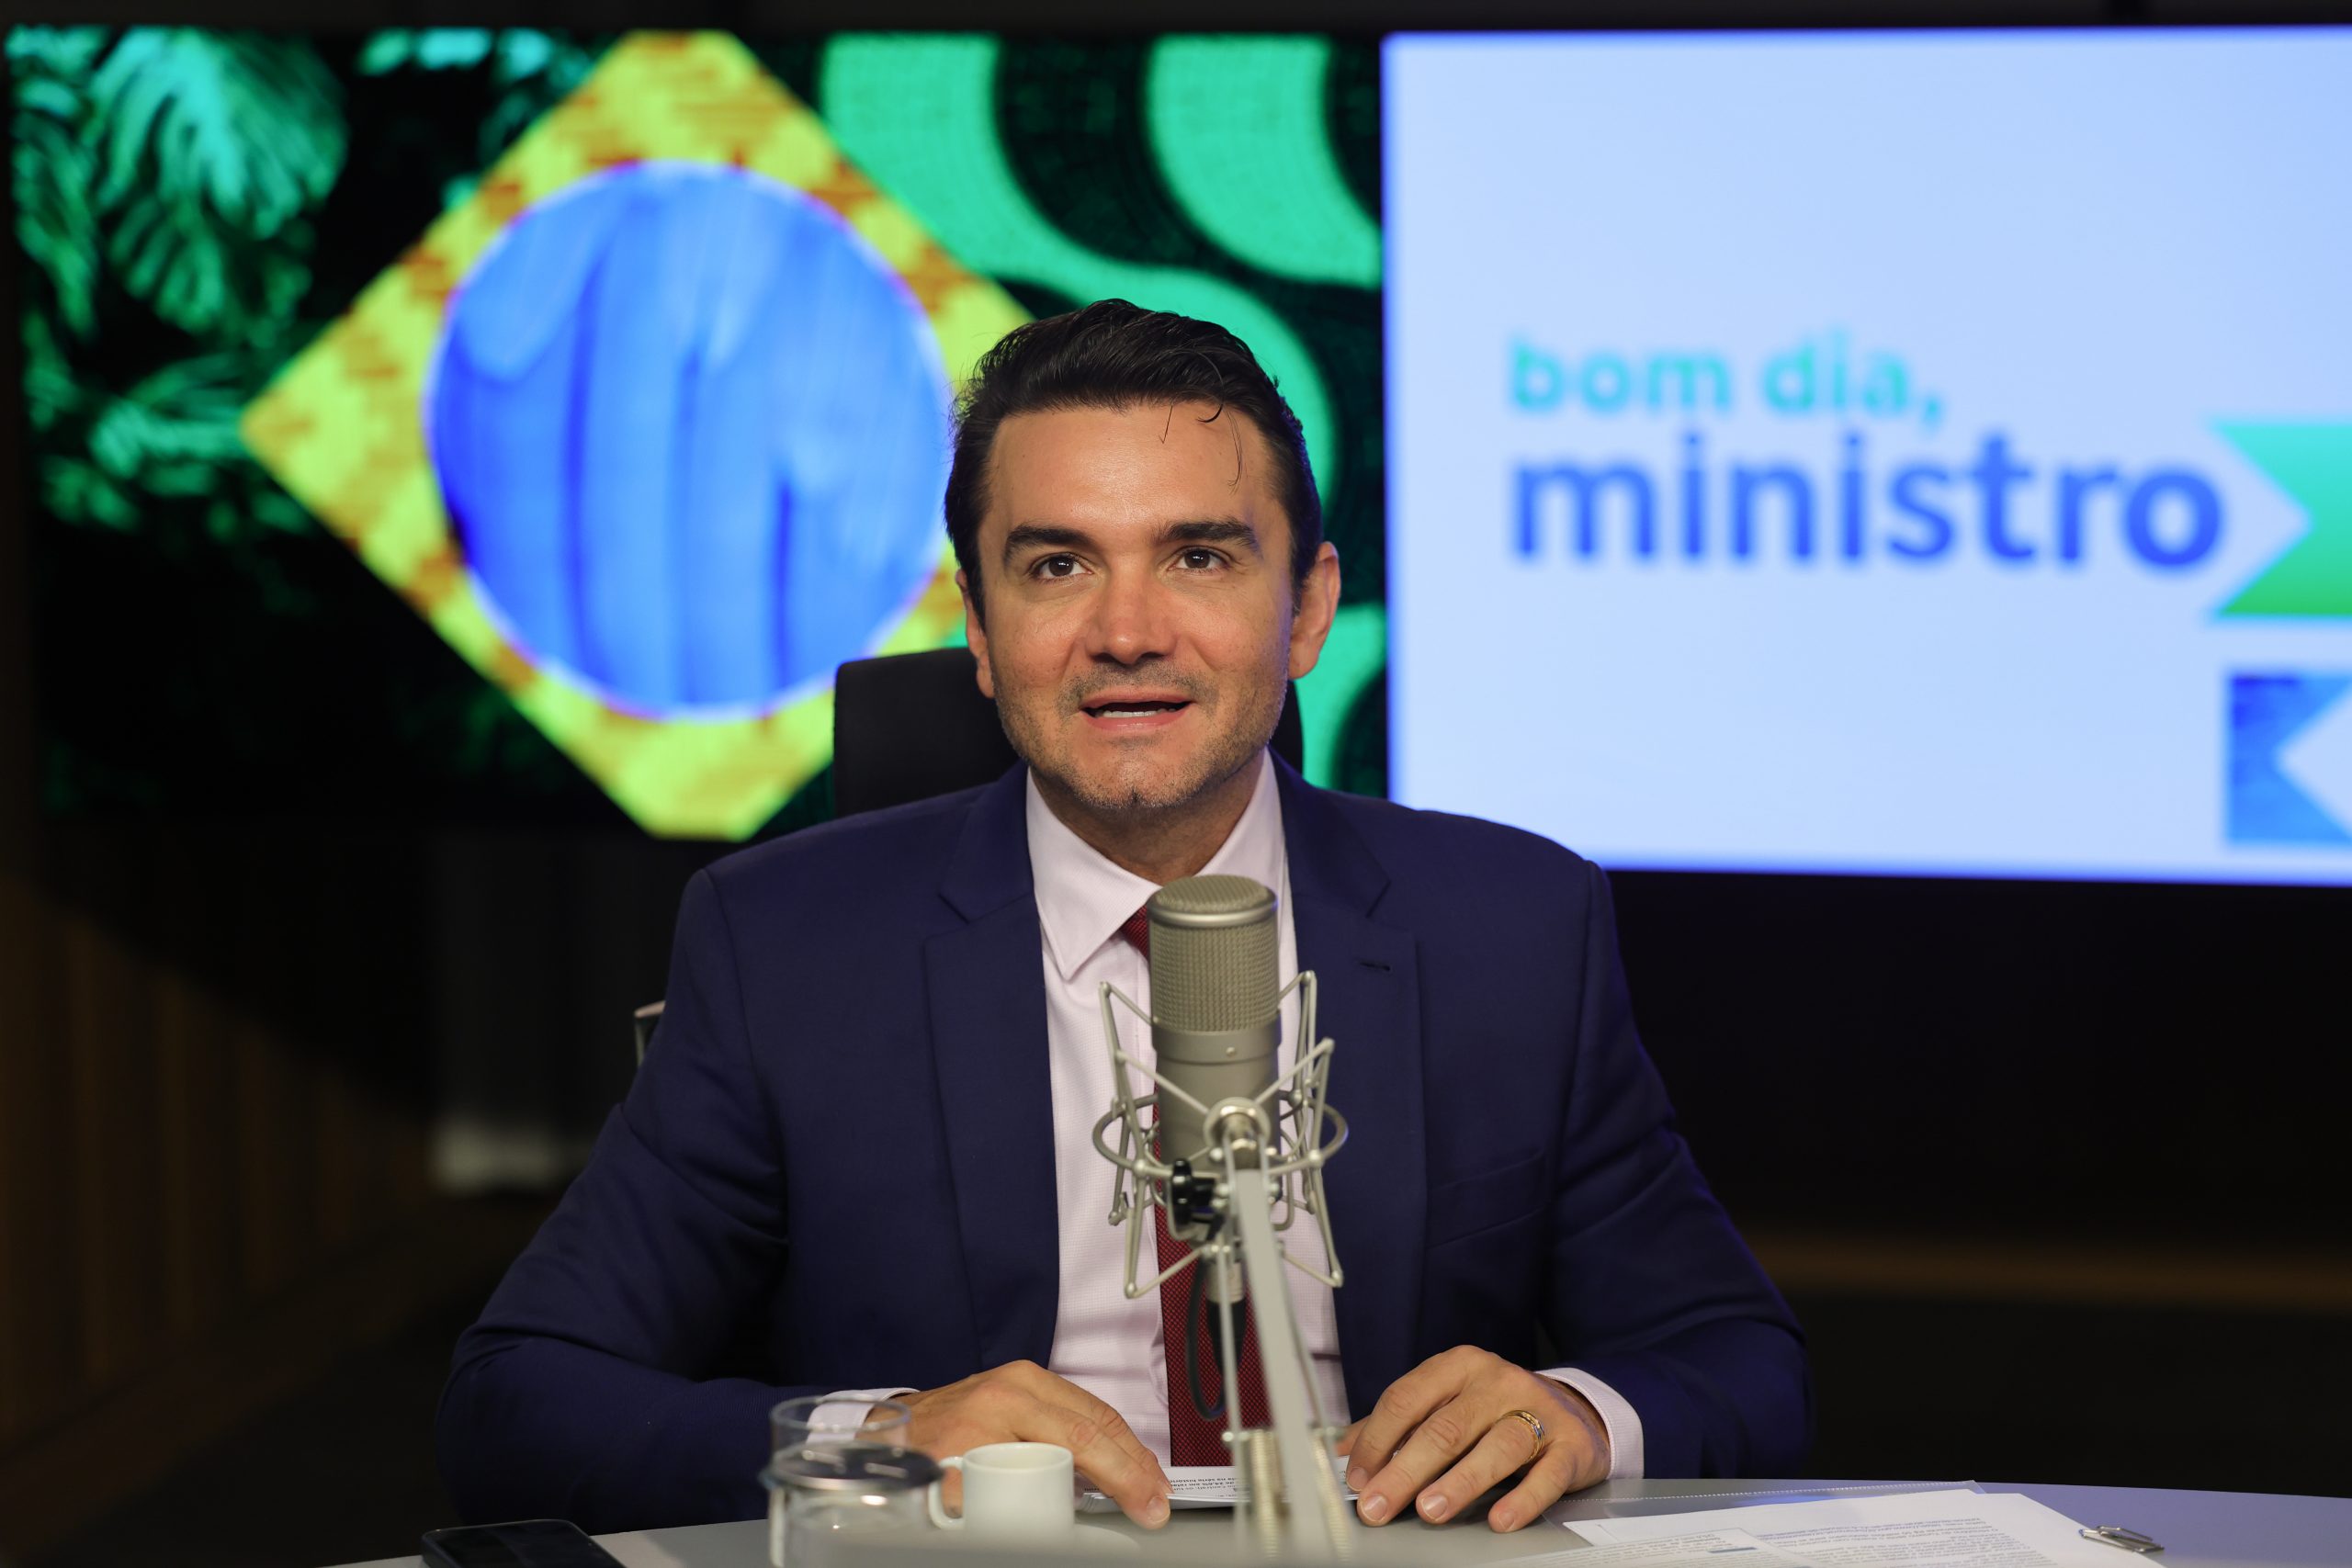 Fotografia do Ministro do Turismo Celso Sabino no programa Bom dia, Ministro. Sabino é importante apoiador da PL dos cassinos e bingos